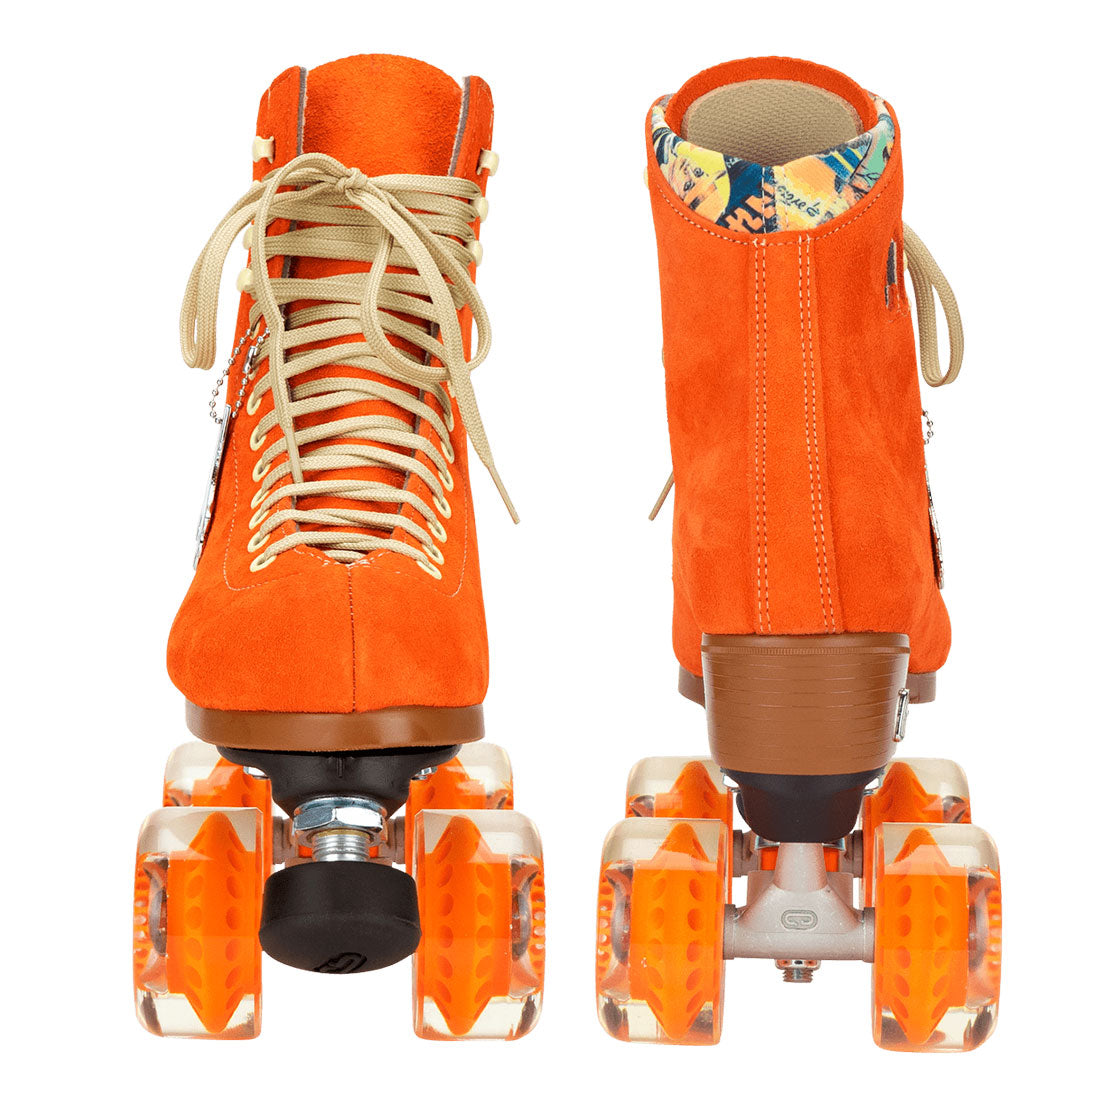 Moxi Lolly Skate - Clementine Orange Roller Skates